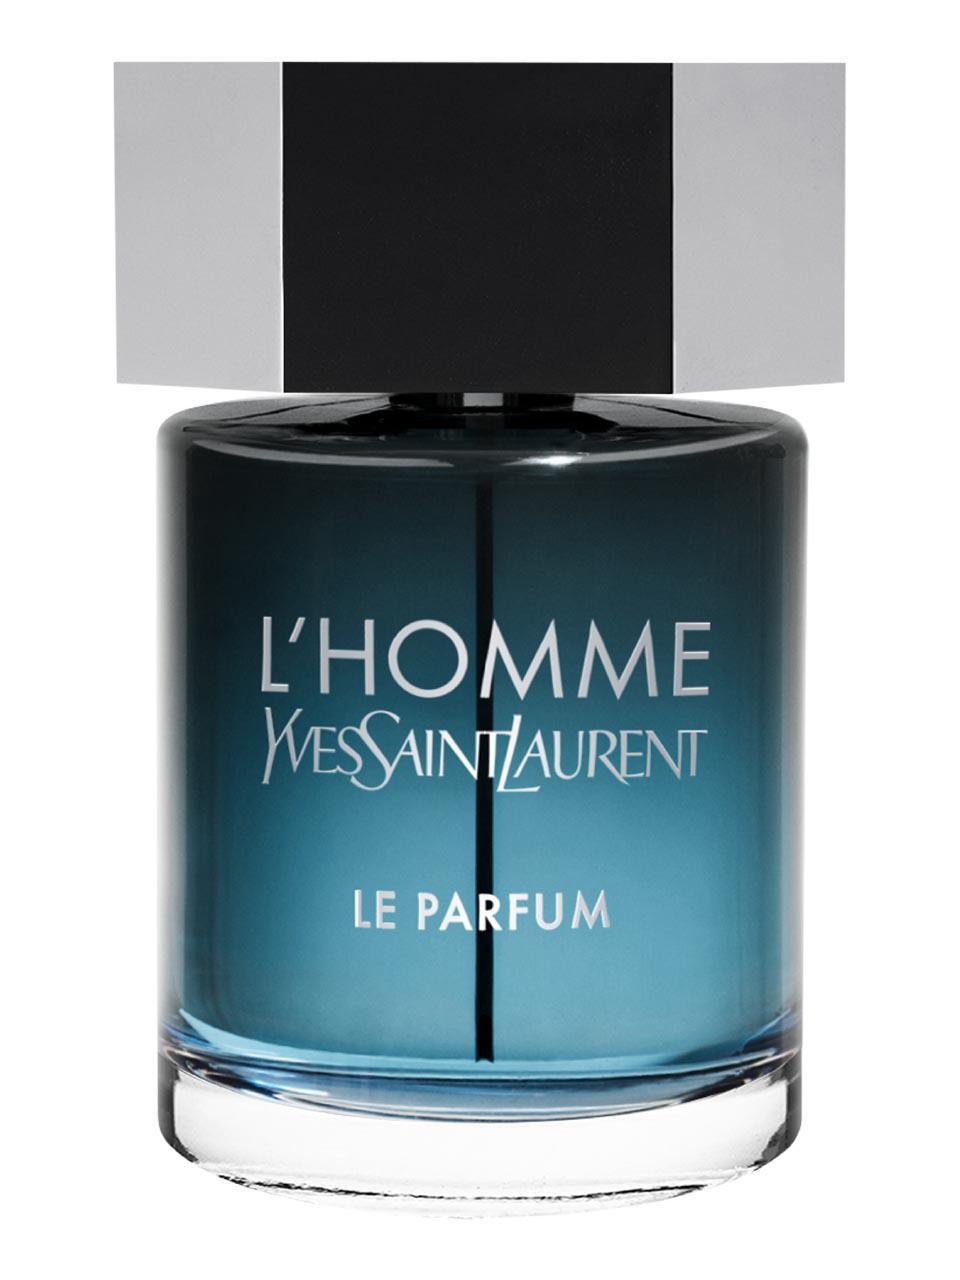 Yves Saint Laurent L'Homme Eau de Parfum 100 ml | Frankfurt Airport ...